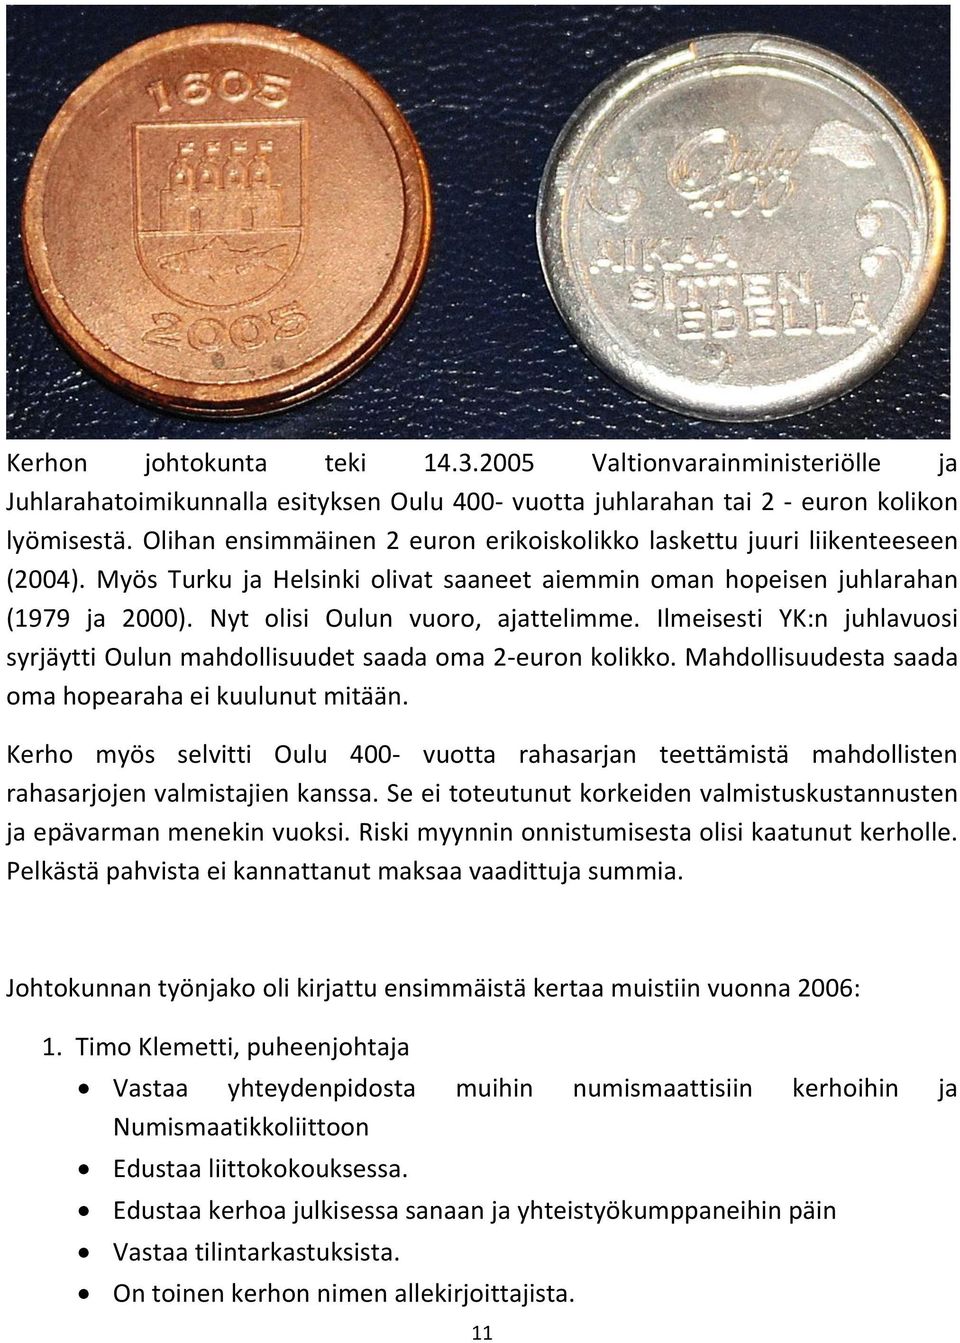 Nyt olisi Oulun vuoro, ajattelimme. Ilmeisesti YK:n juhlavuosi syrjäytti Oulun mahdollisuudet saada oma 2-euron kolikko. Mahdollisuudesta saada oma hopearaha ei kuulunut mitään.